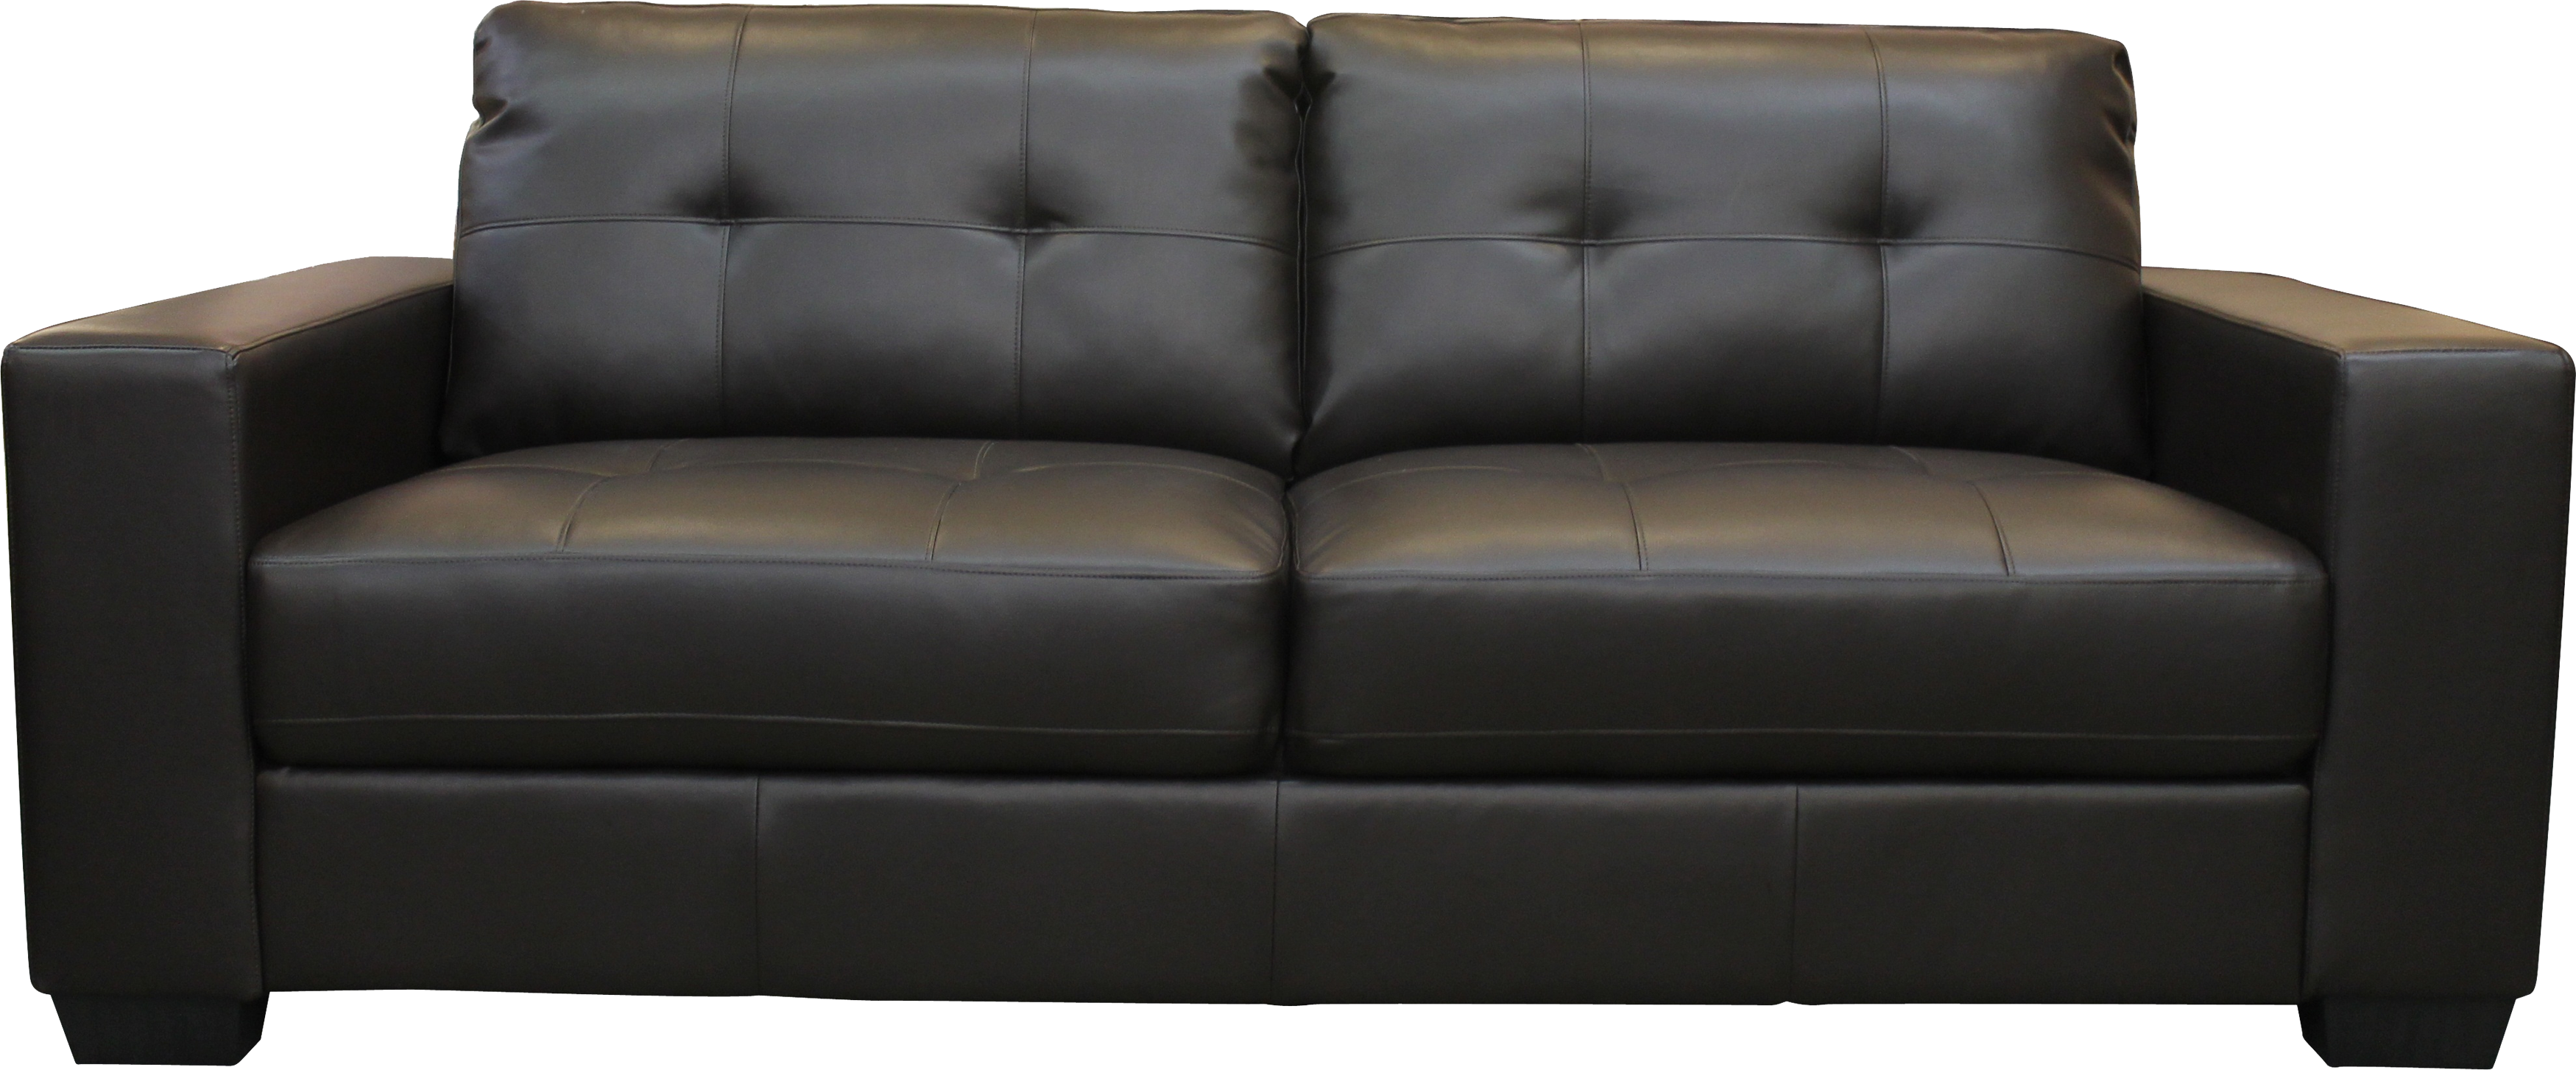 simple furniture design sofa 